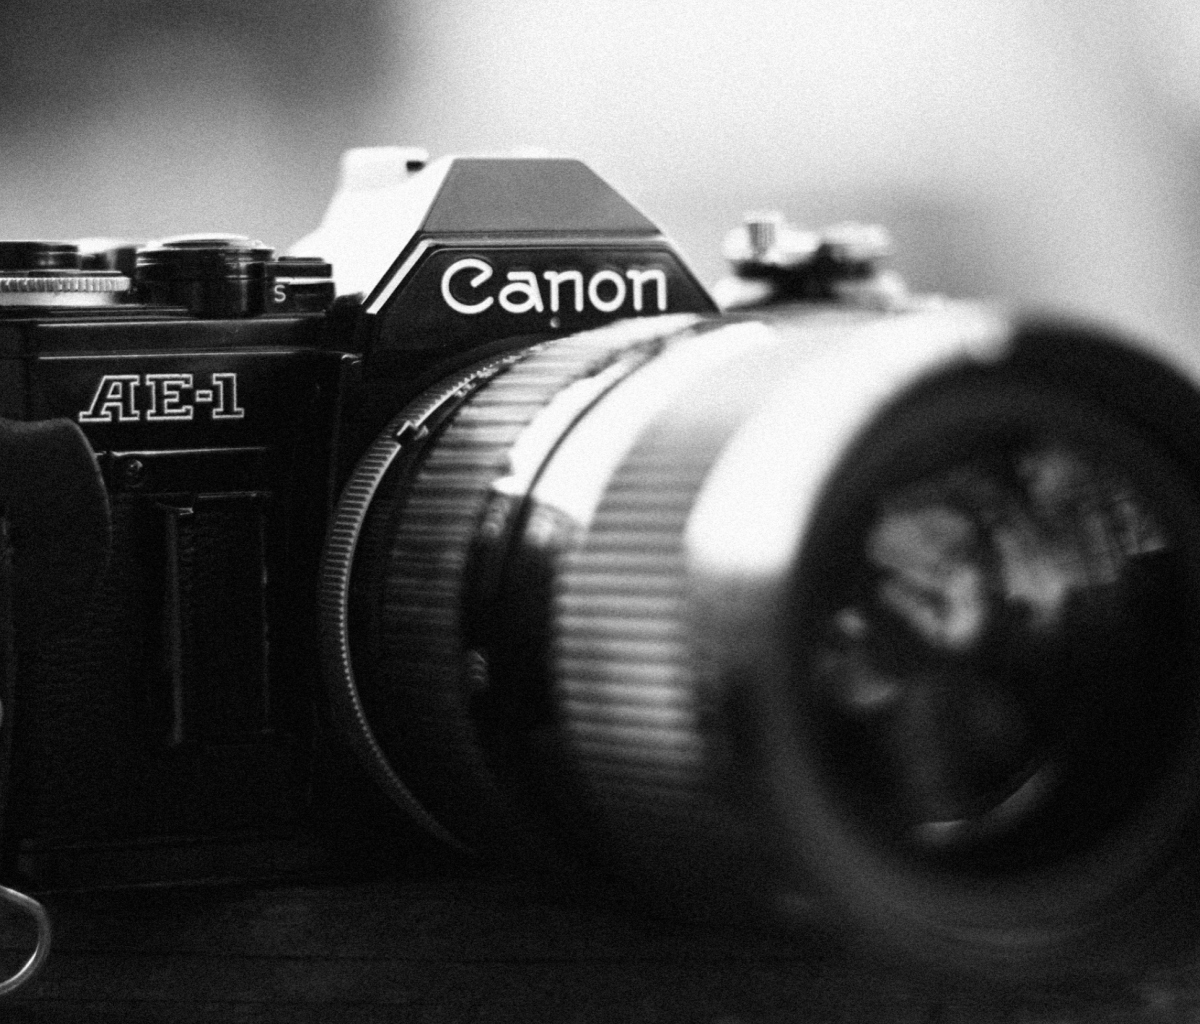 Das Ae-1 Canon Camera Wallpaper 1200x1024